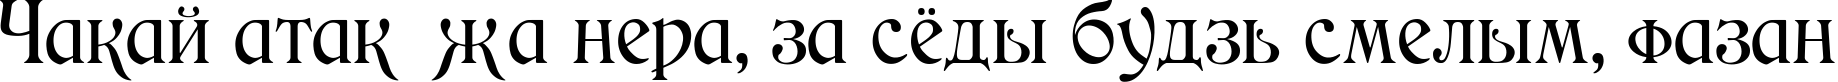 Пример написания шрифтом Medieval текста на белорусском